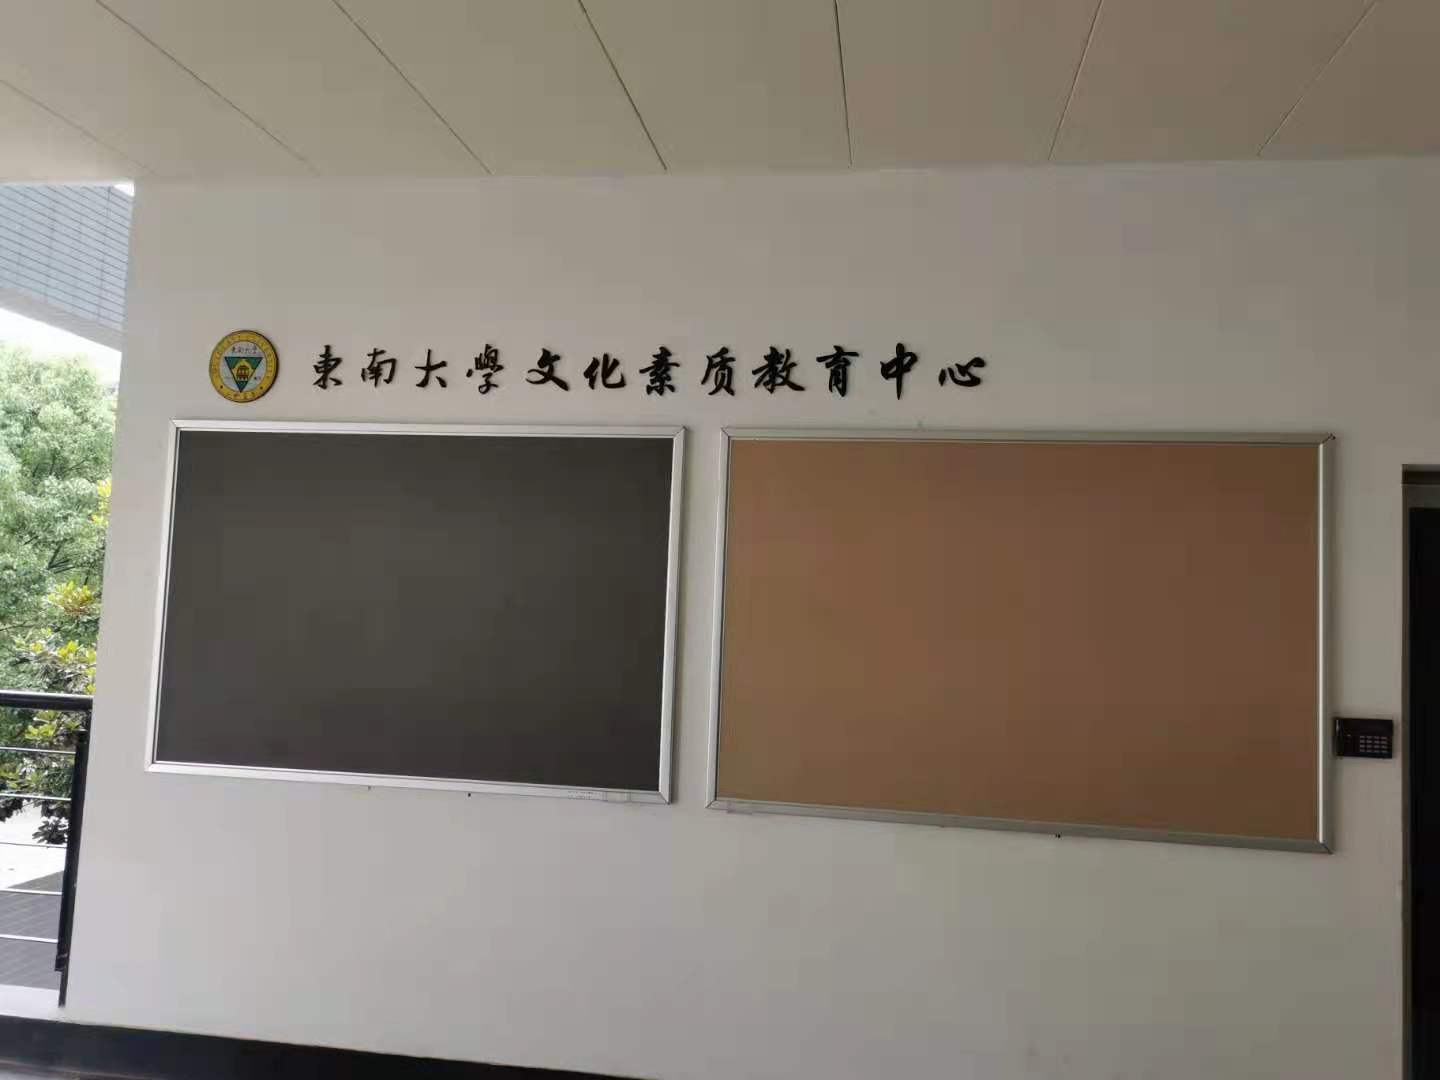 学校教室后墙黑板 可按图钉的黑板\t 软木板公告栏 优雅乐 重复插钉1万次图片